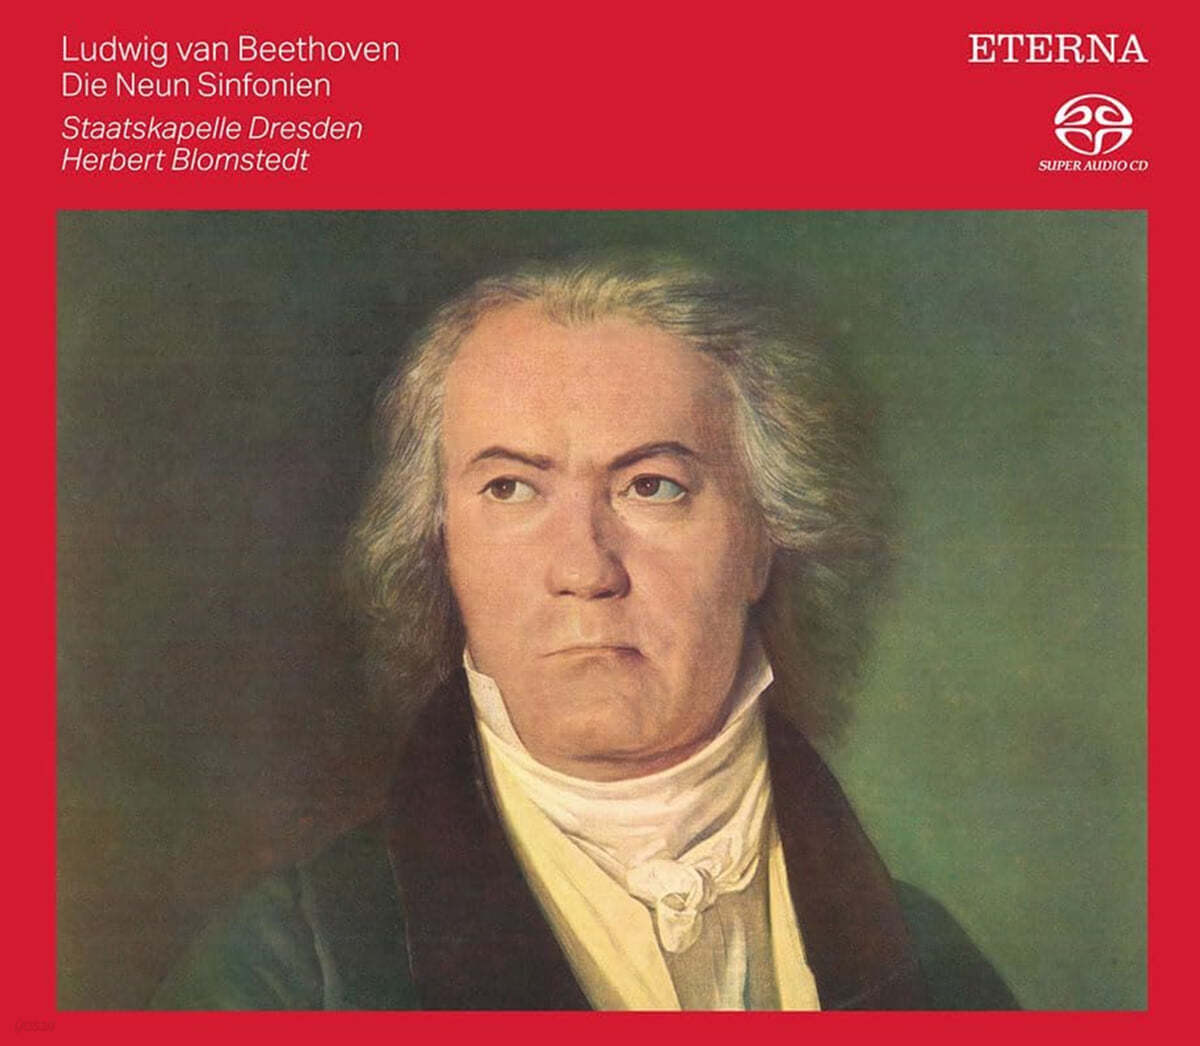 Herbert Blomstedt 베토벤 교향곡 전곡집 (Beethoven: Complete Symphonies)